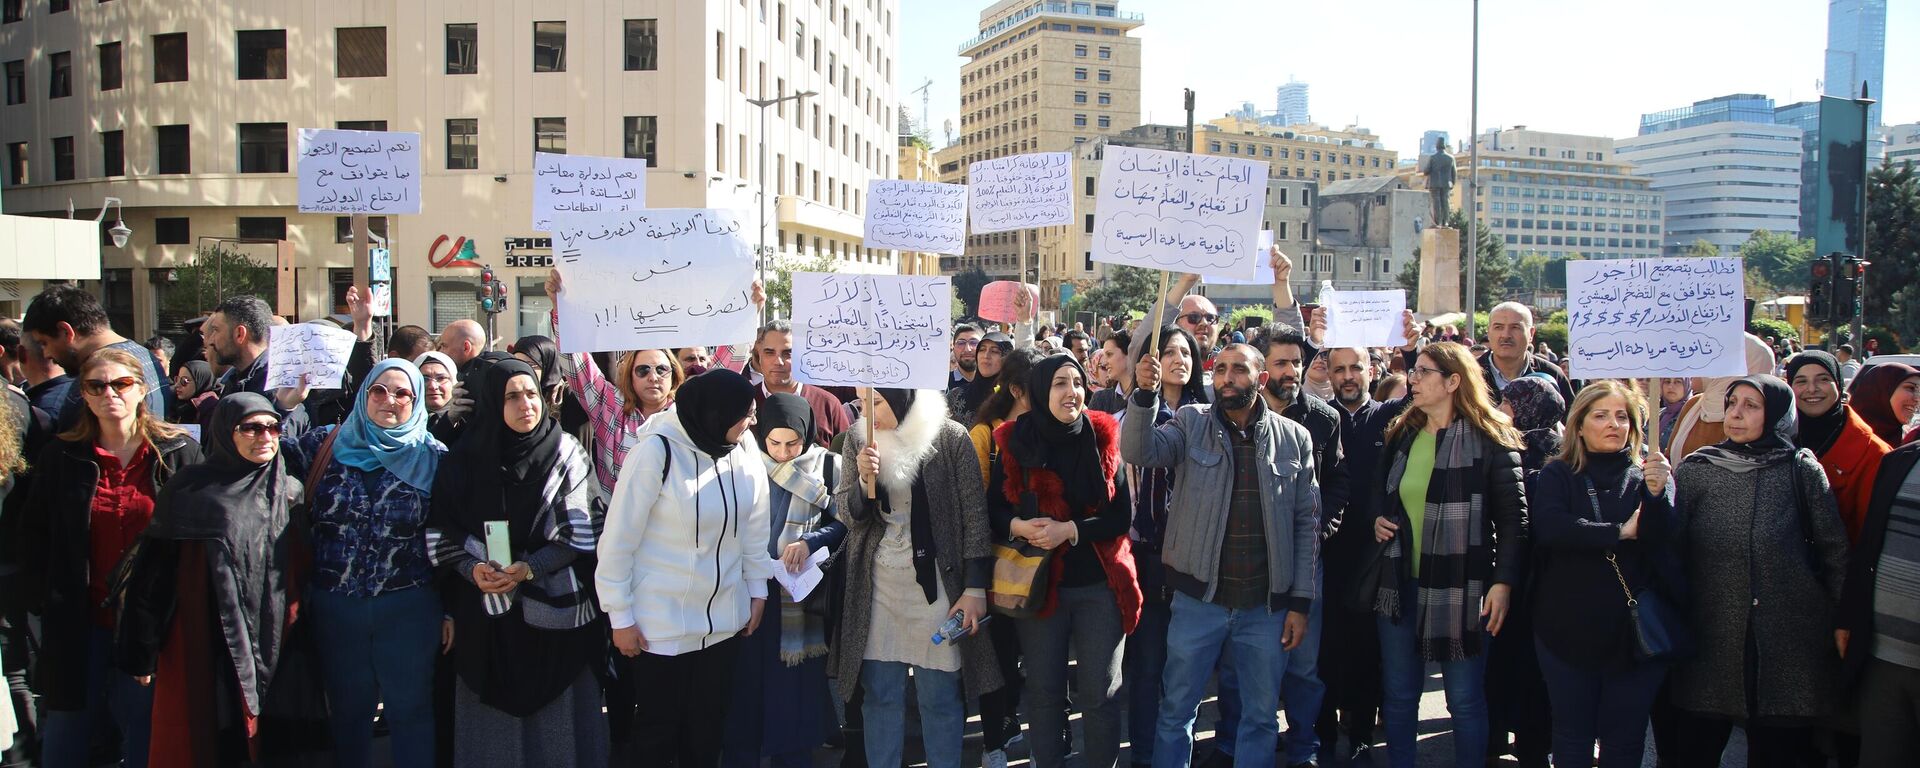 إضراب أساتذة لبنان يدخل أسبوعه الثاني وإرتفاع وتيرة الإحتجاجات لرفع الظلم وتحقيق الإنصاف وإنقاذ مصير الطلاب - سبوتنيك عربي, 1920, 30.04.2023